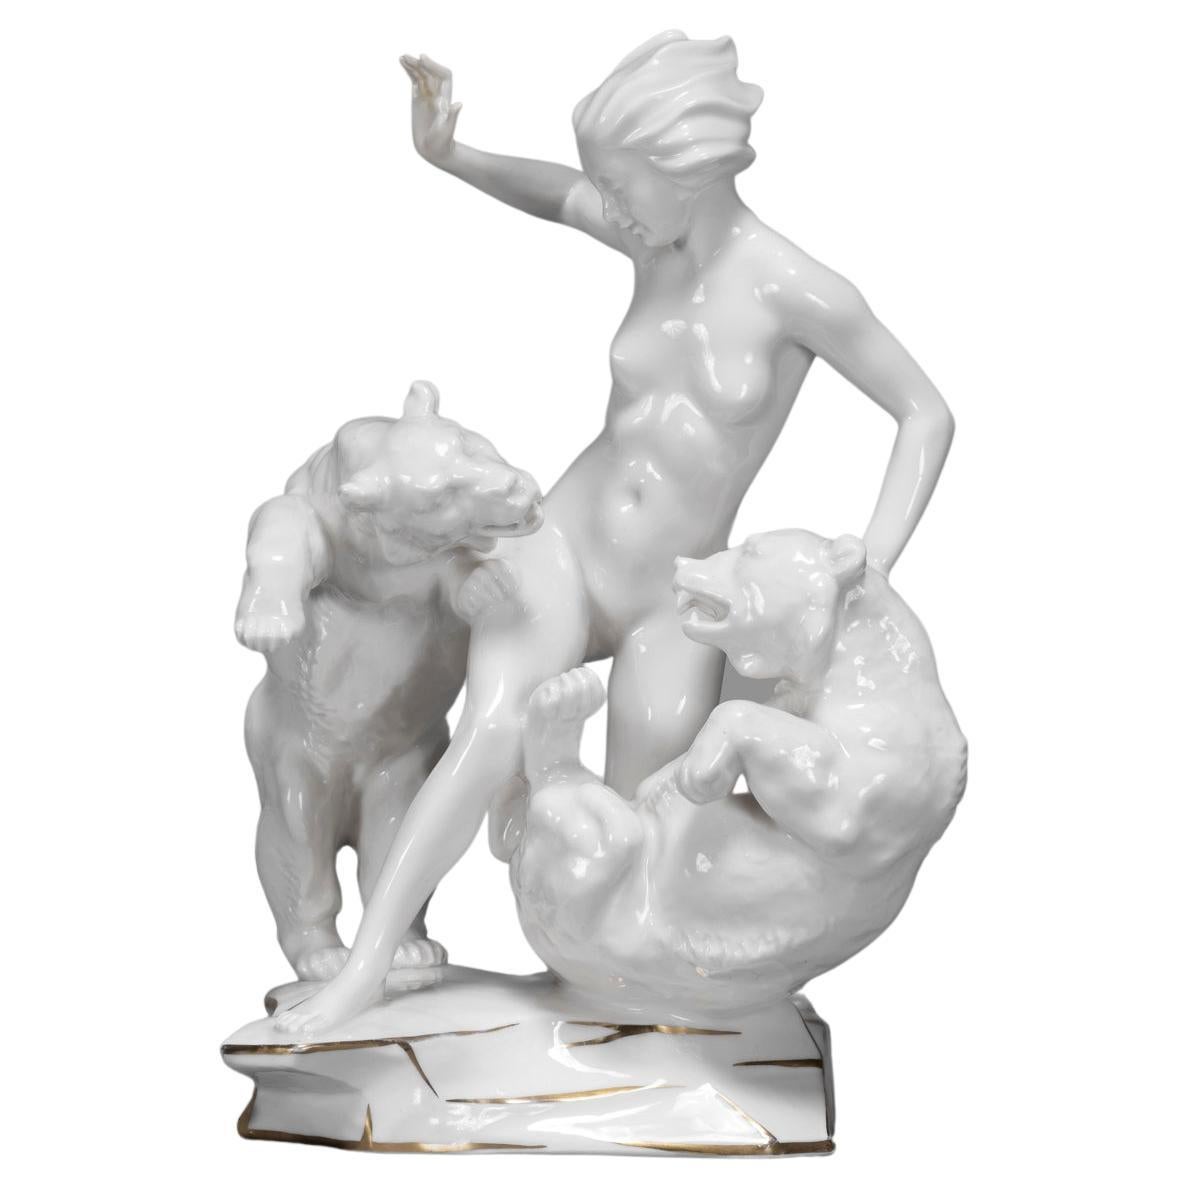 Hutschenreuther Porcelain Figurine   "JEALOUSLY"   Karl Tutter 1938 For Sale